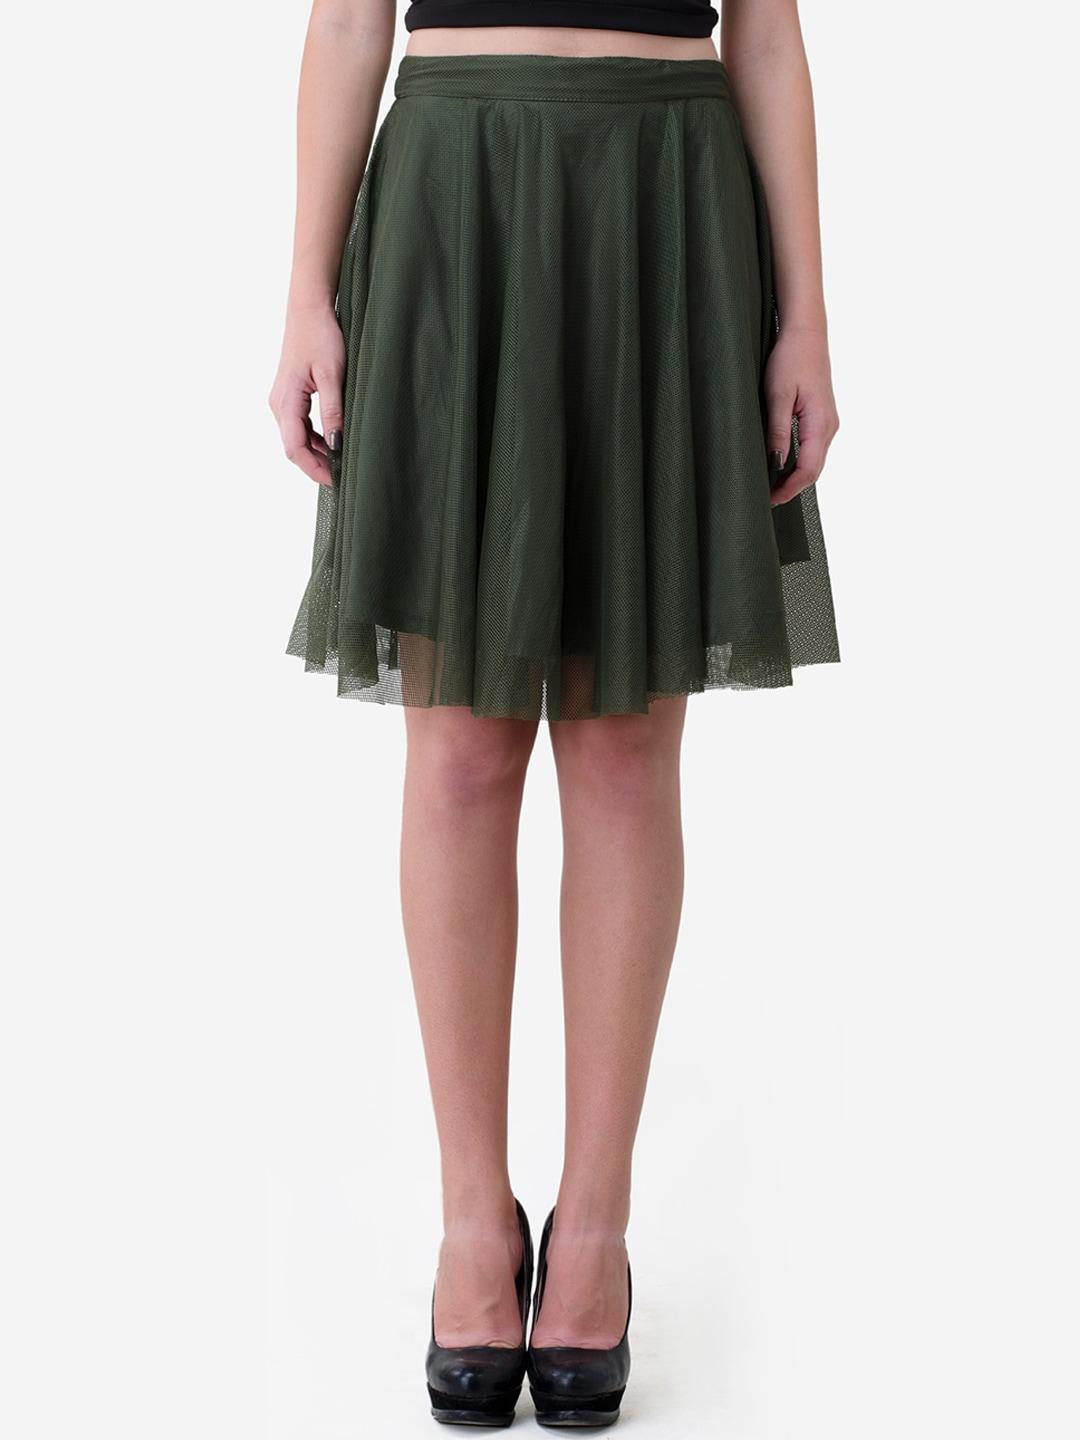 v&m women olive-green self design flared knee-length skirt